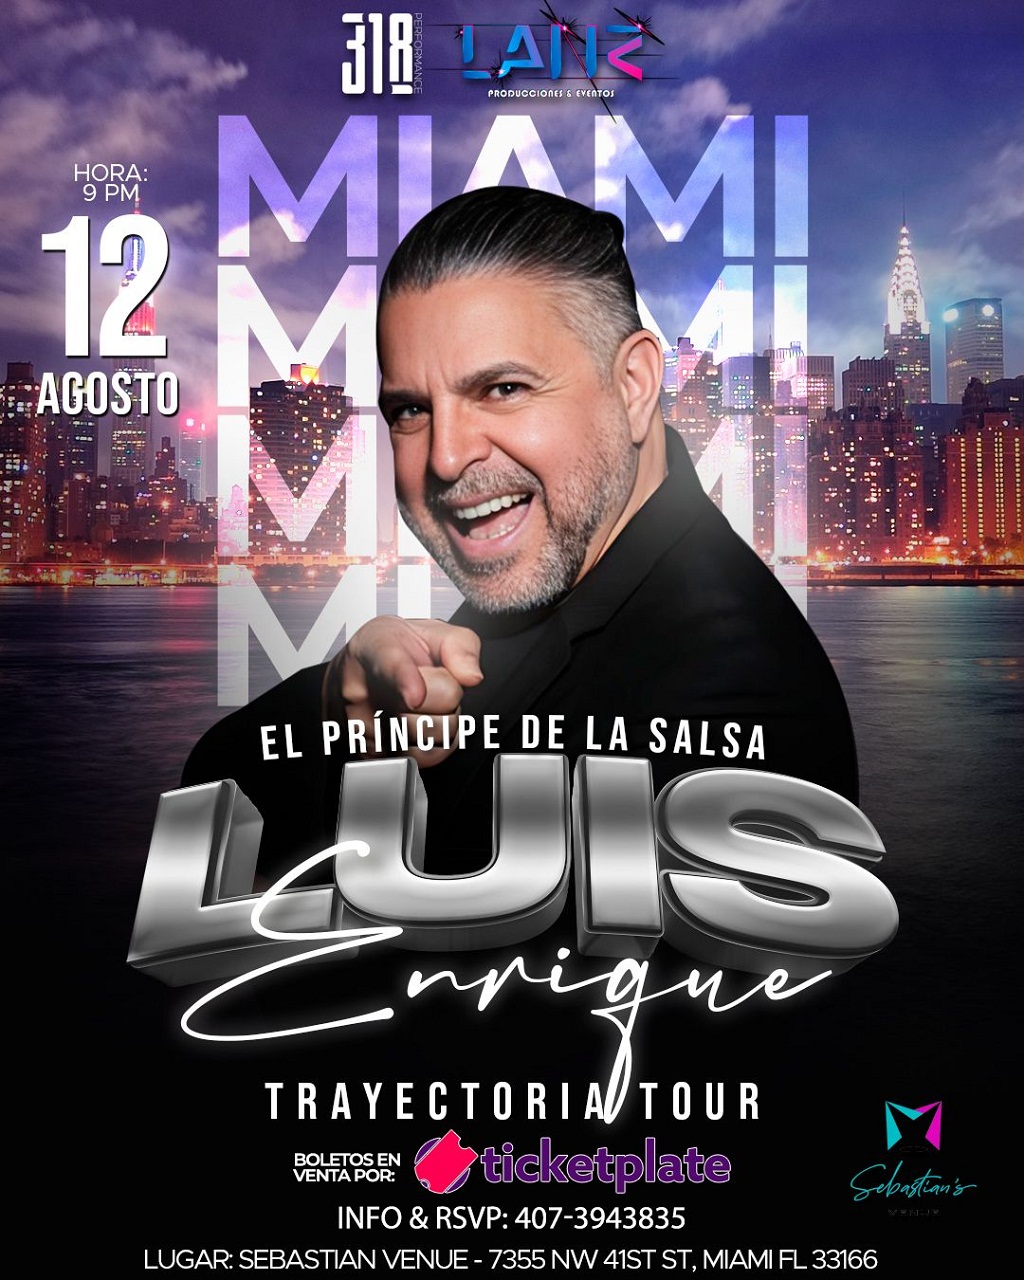 Tour Trayectoria de Luis Enrique en Miami - noticiacn